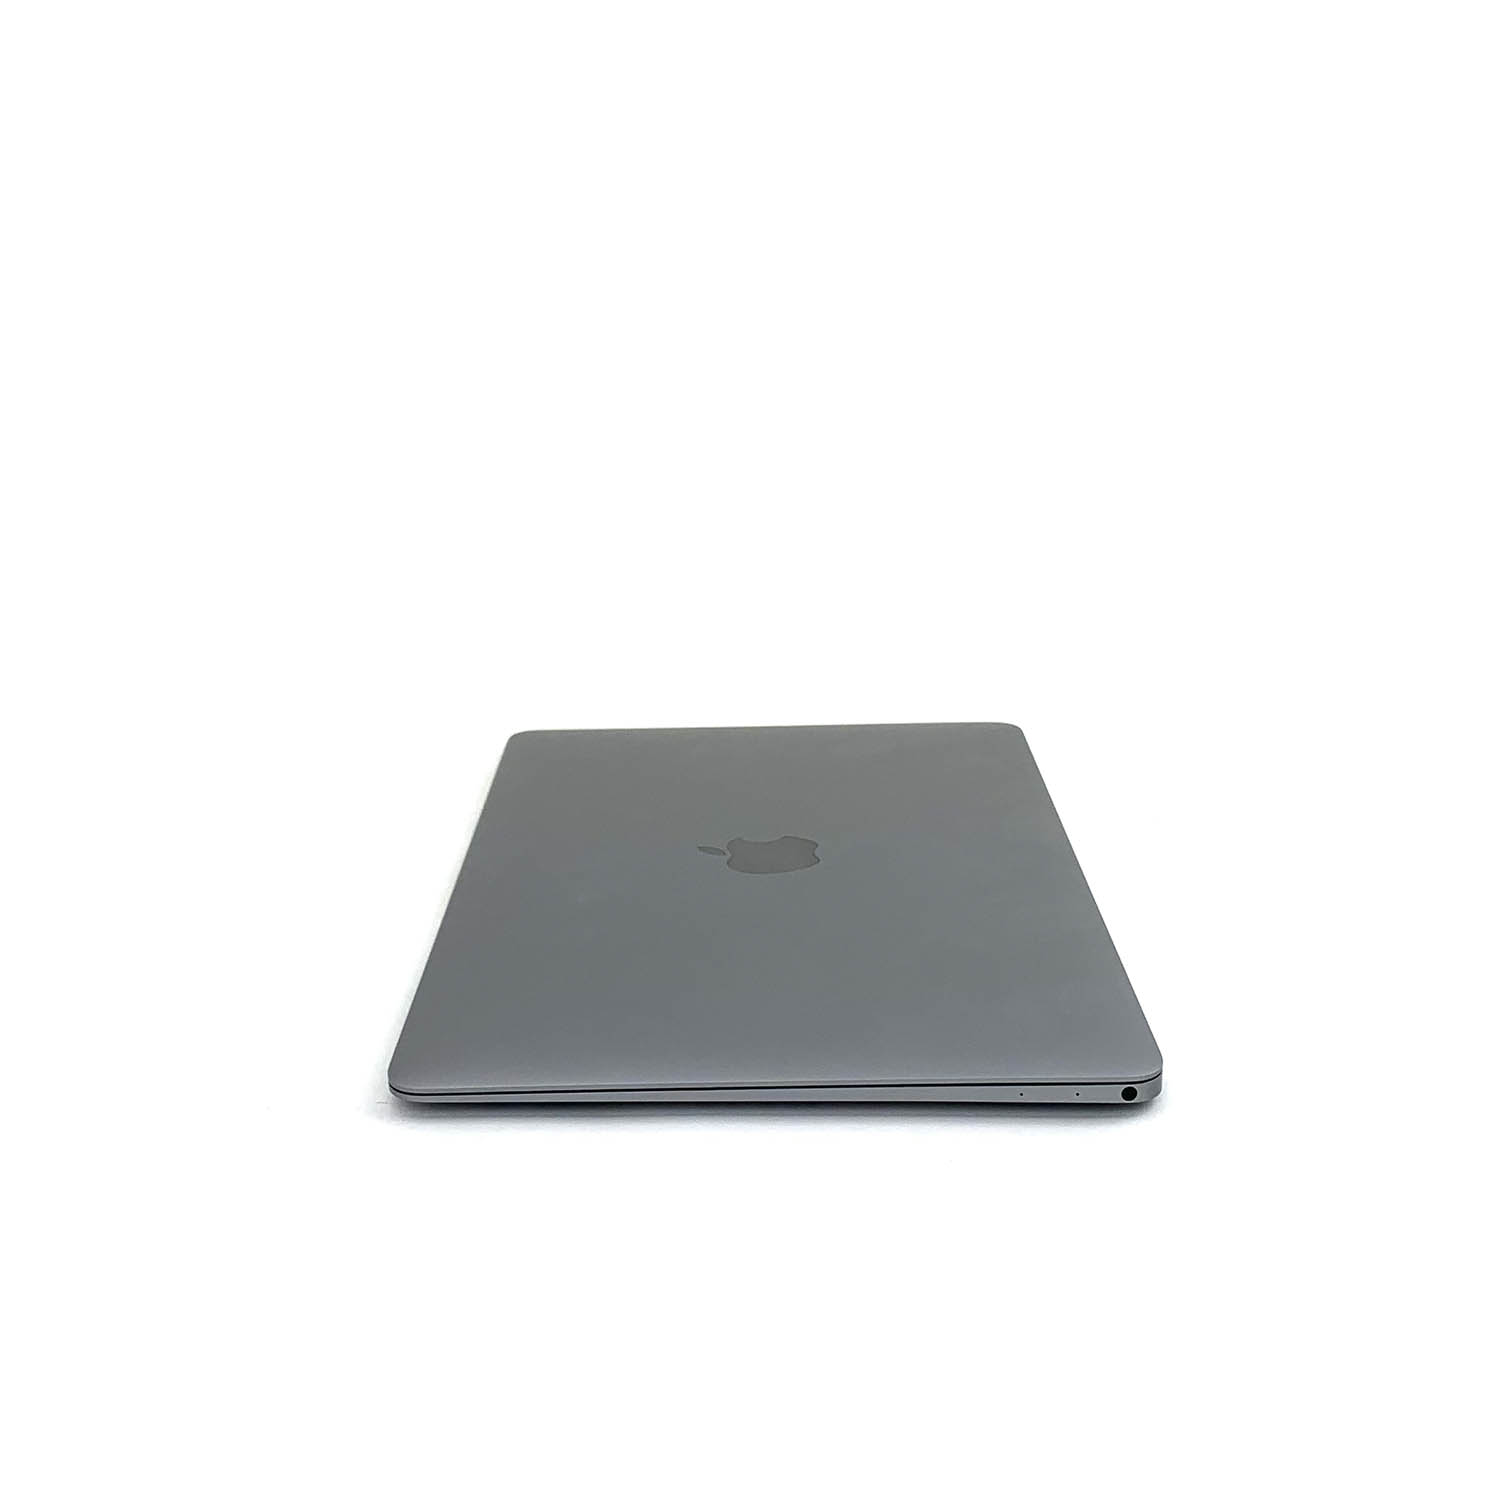 Macbook 12 Space Gray Core M 1.2Ghz 8GB 256GB SSD MNYF2LL/A Seminovo